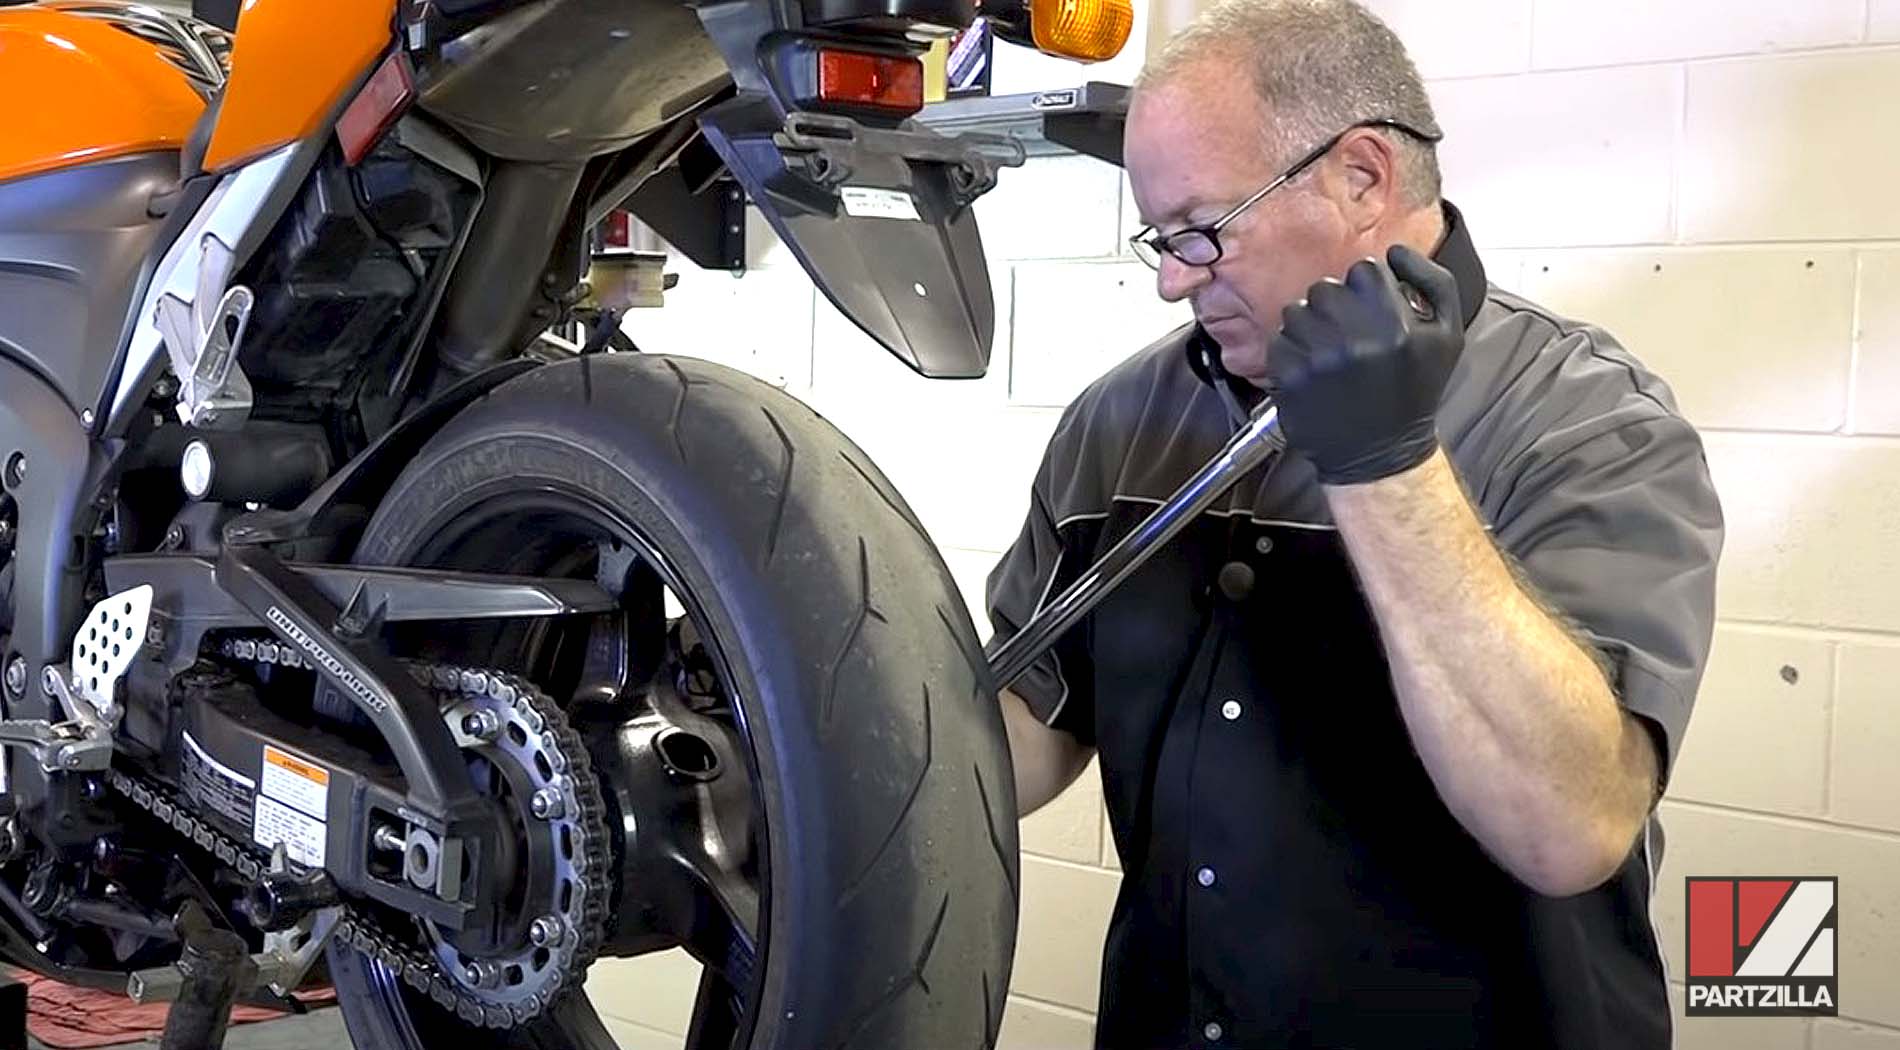 Honda CBR 600 sports bike maintenance